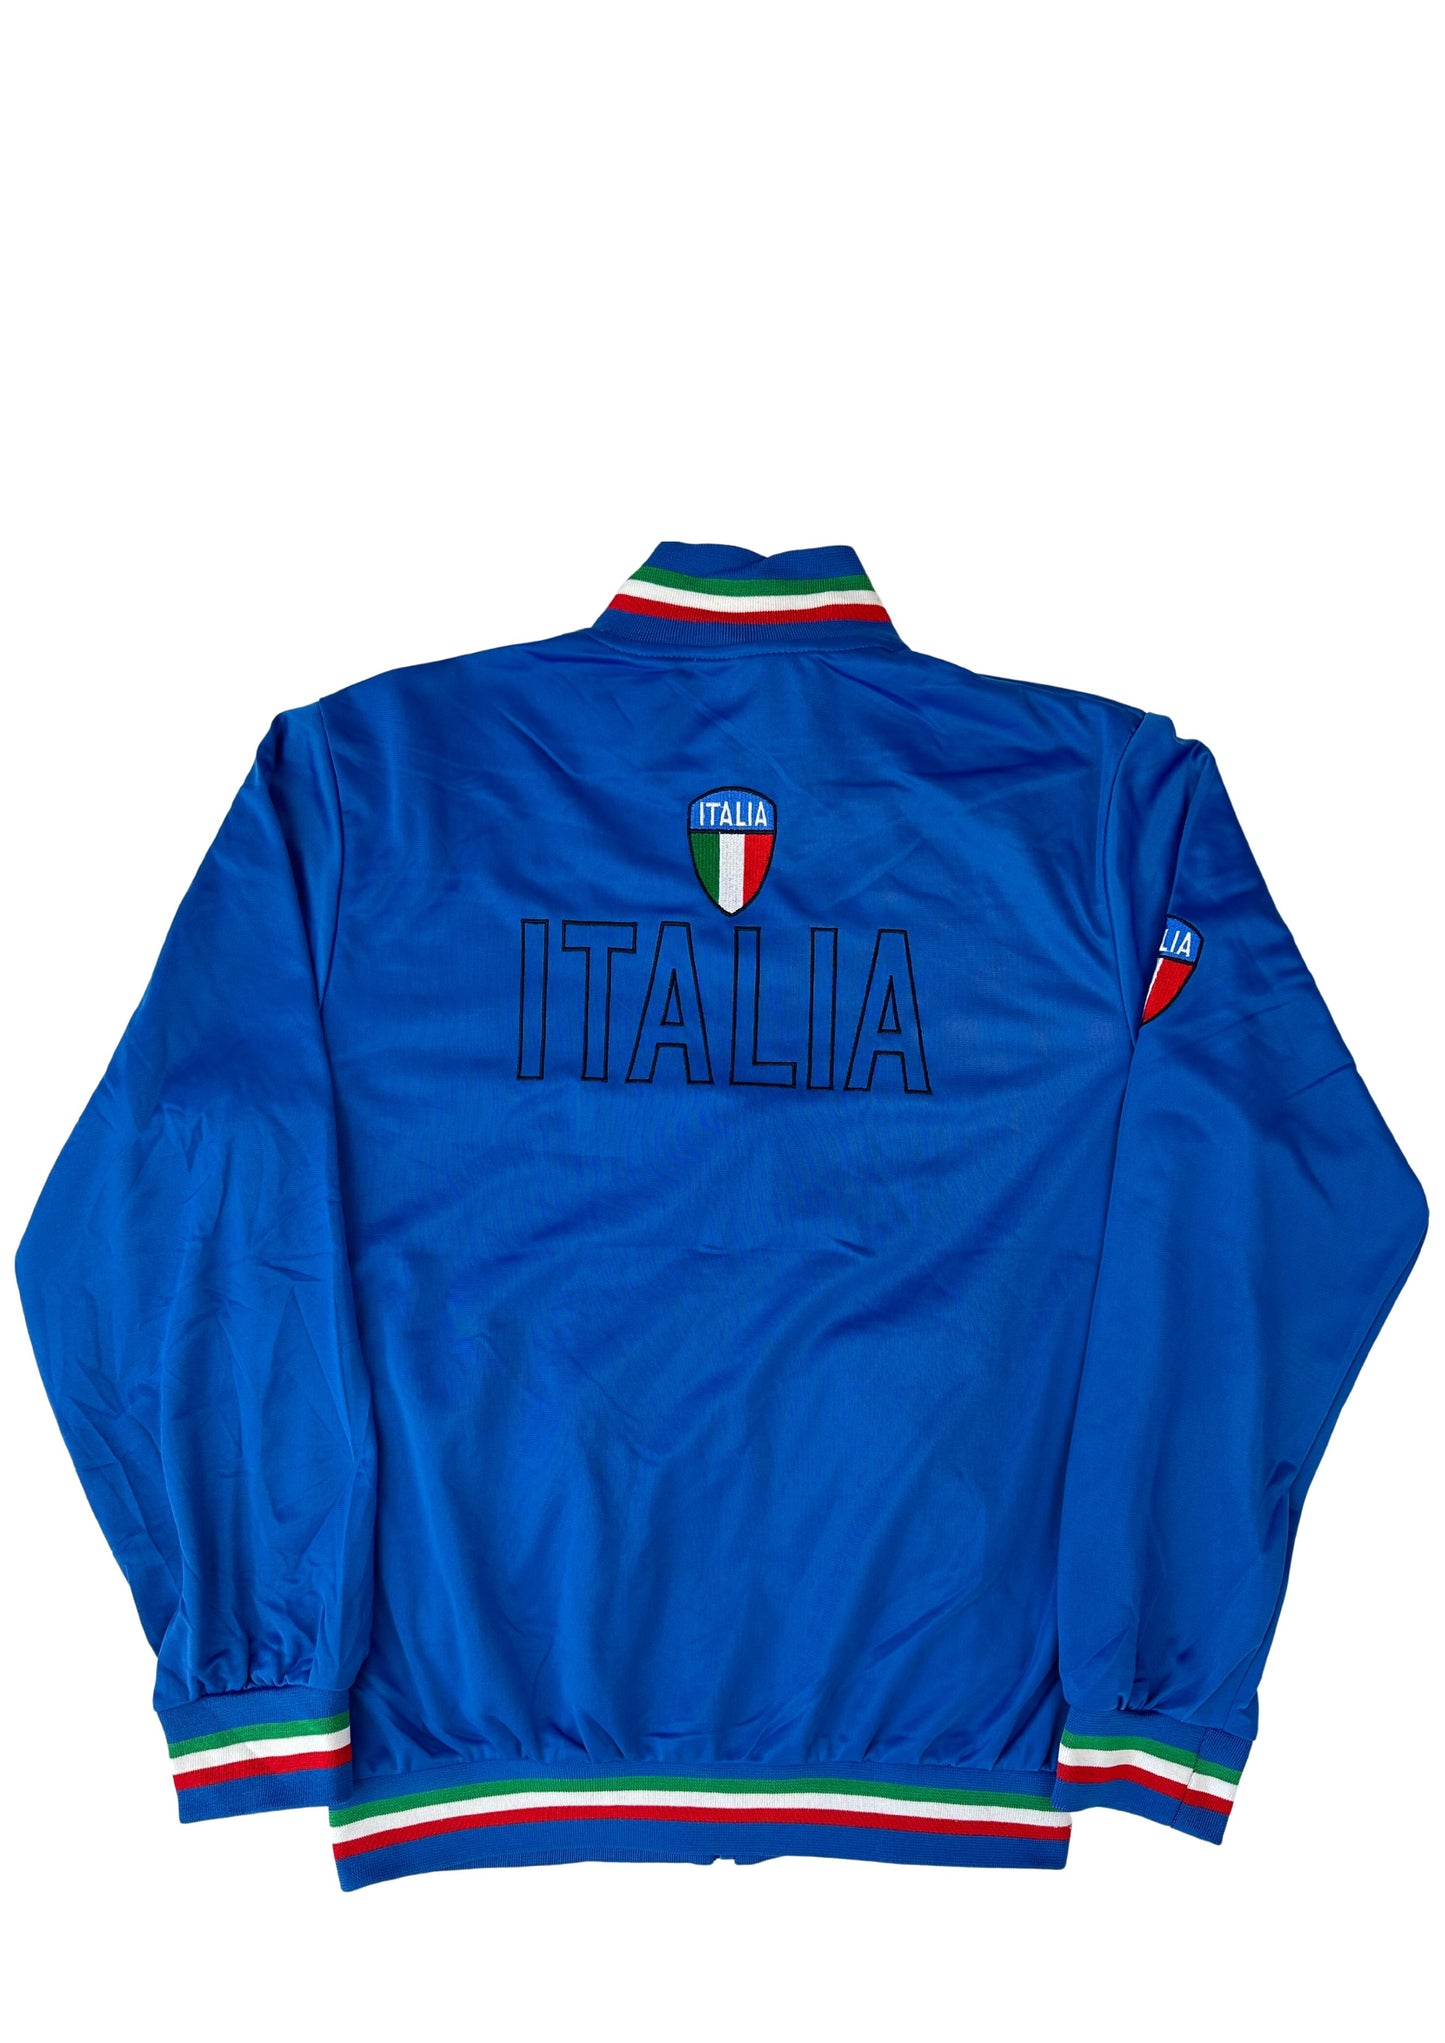 track jacket "Italia" - mint